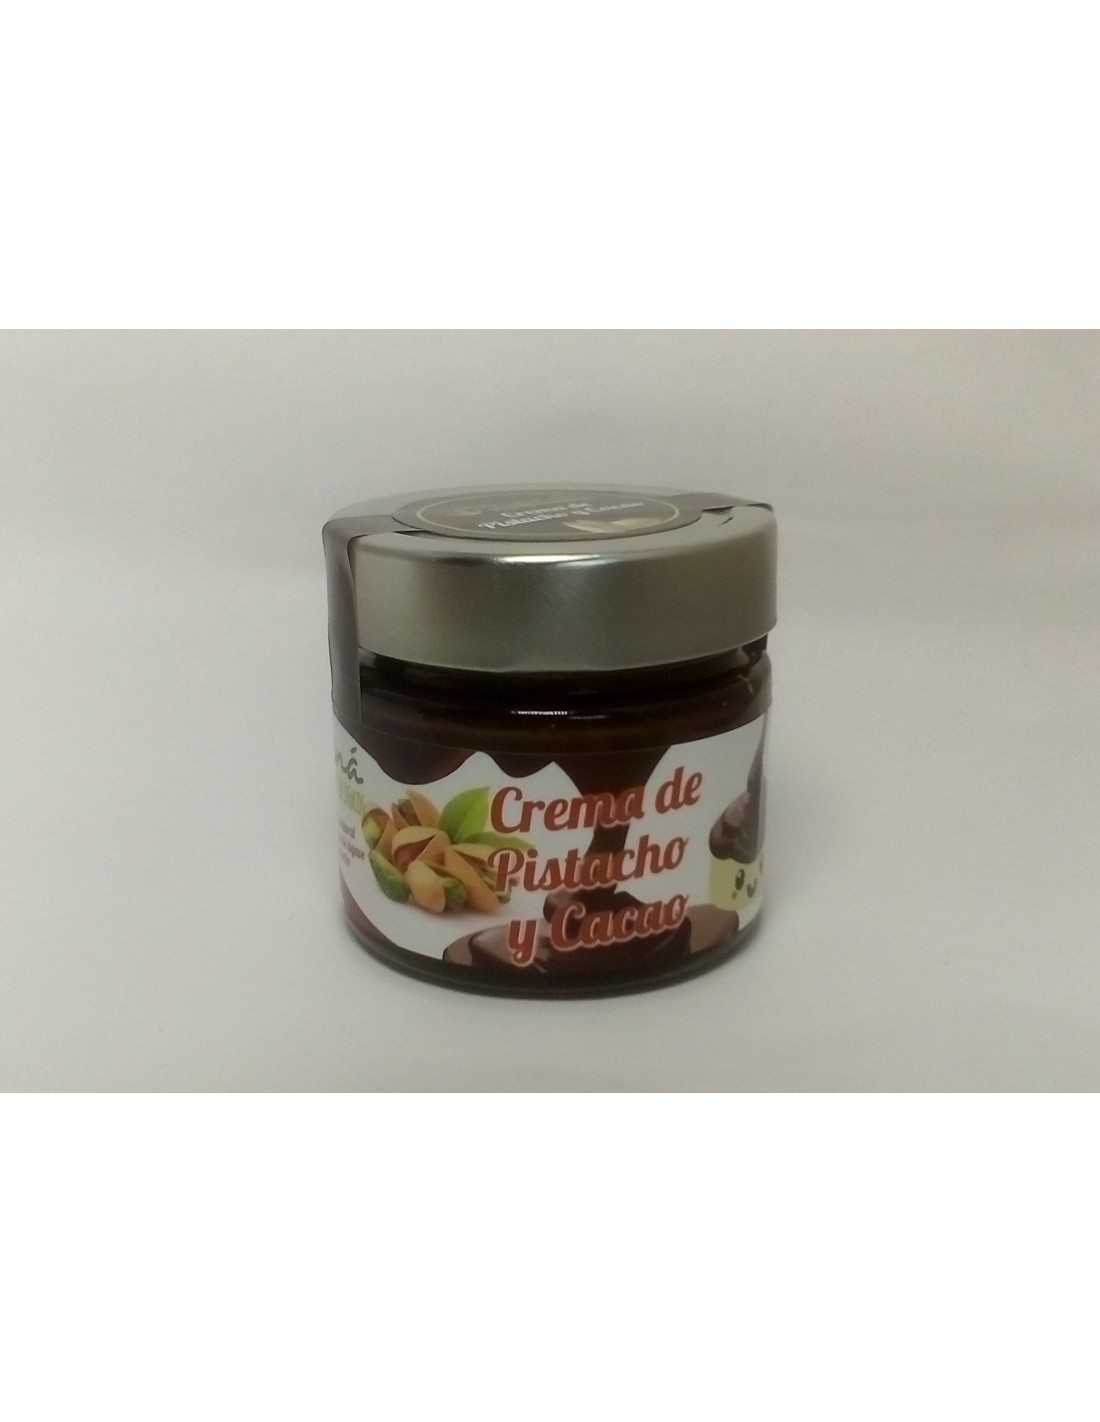 MANA - crema de pistacho y cacao (Espagne)